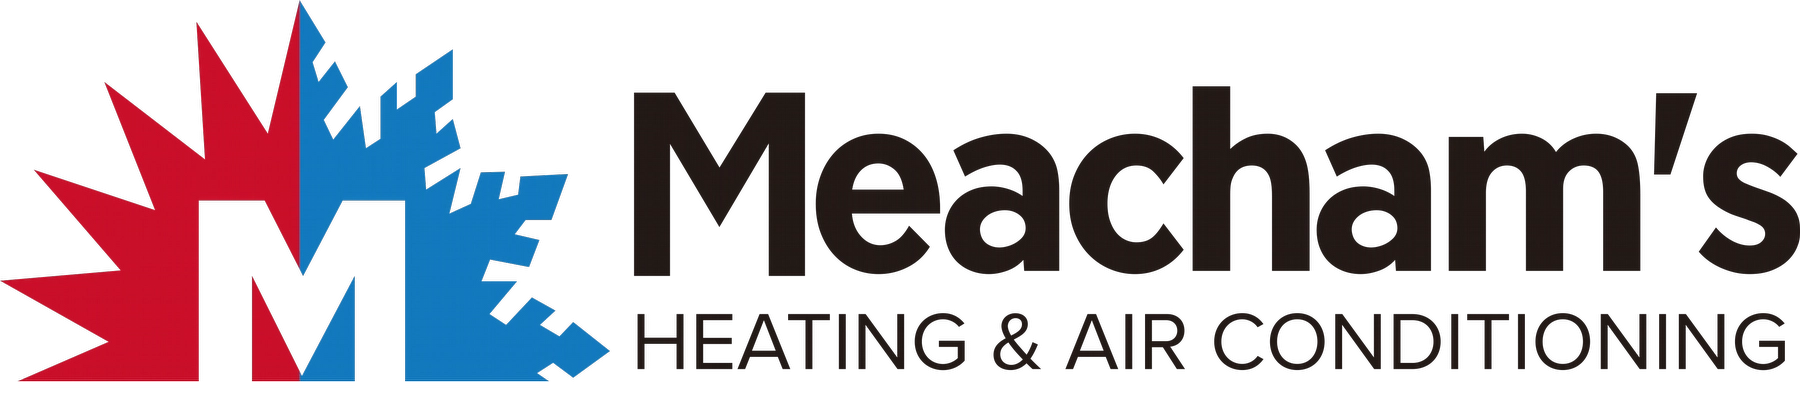 Meacham's Heating and Air Logo